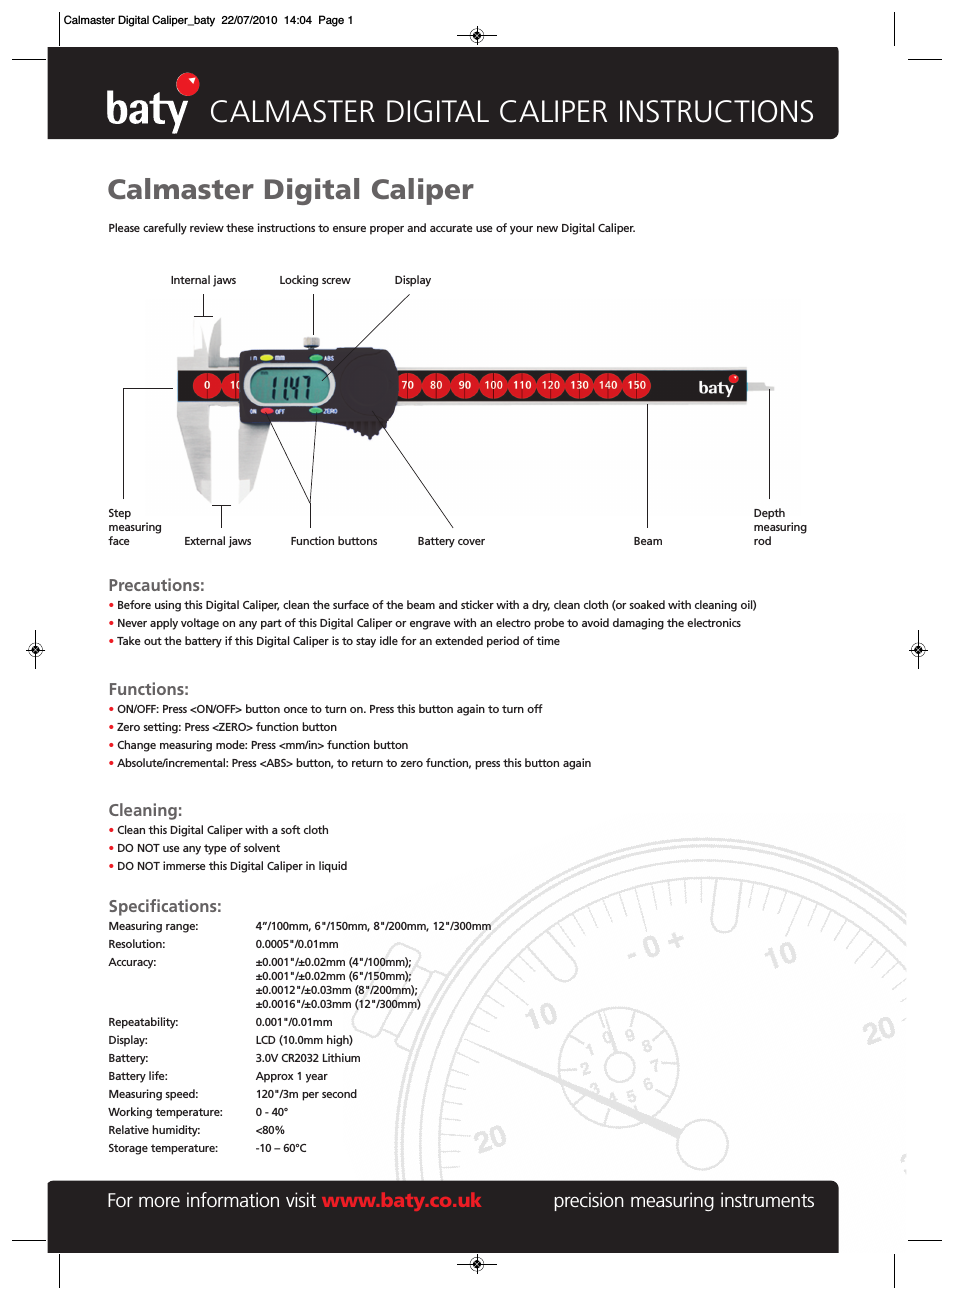 Baty - Calmaster Digital Caliper